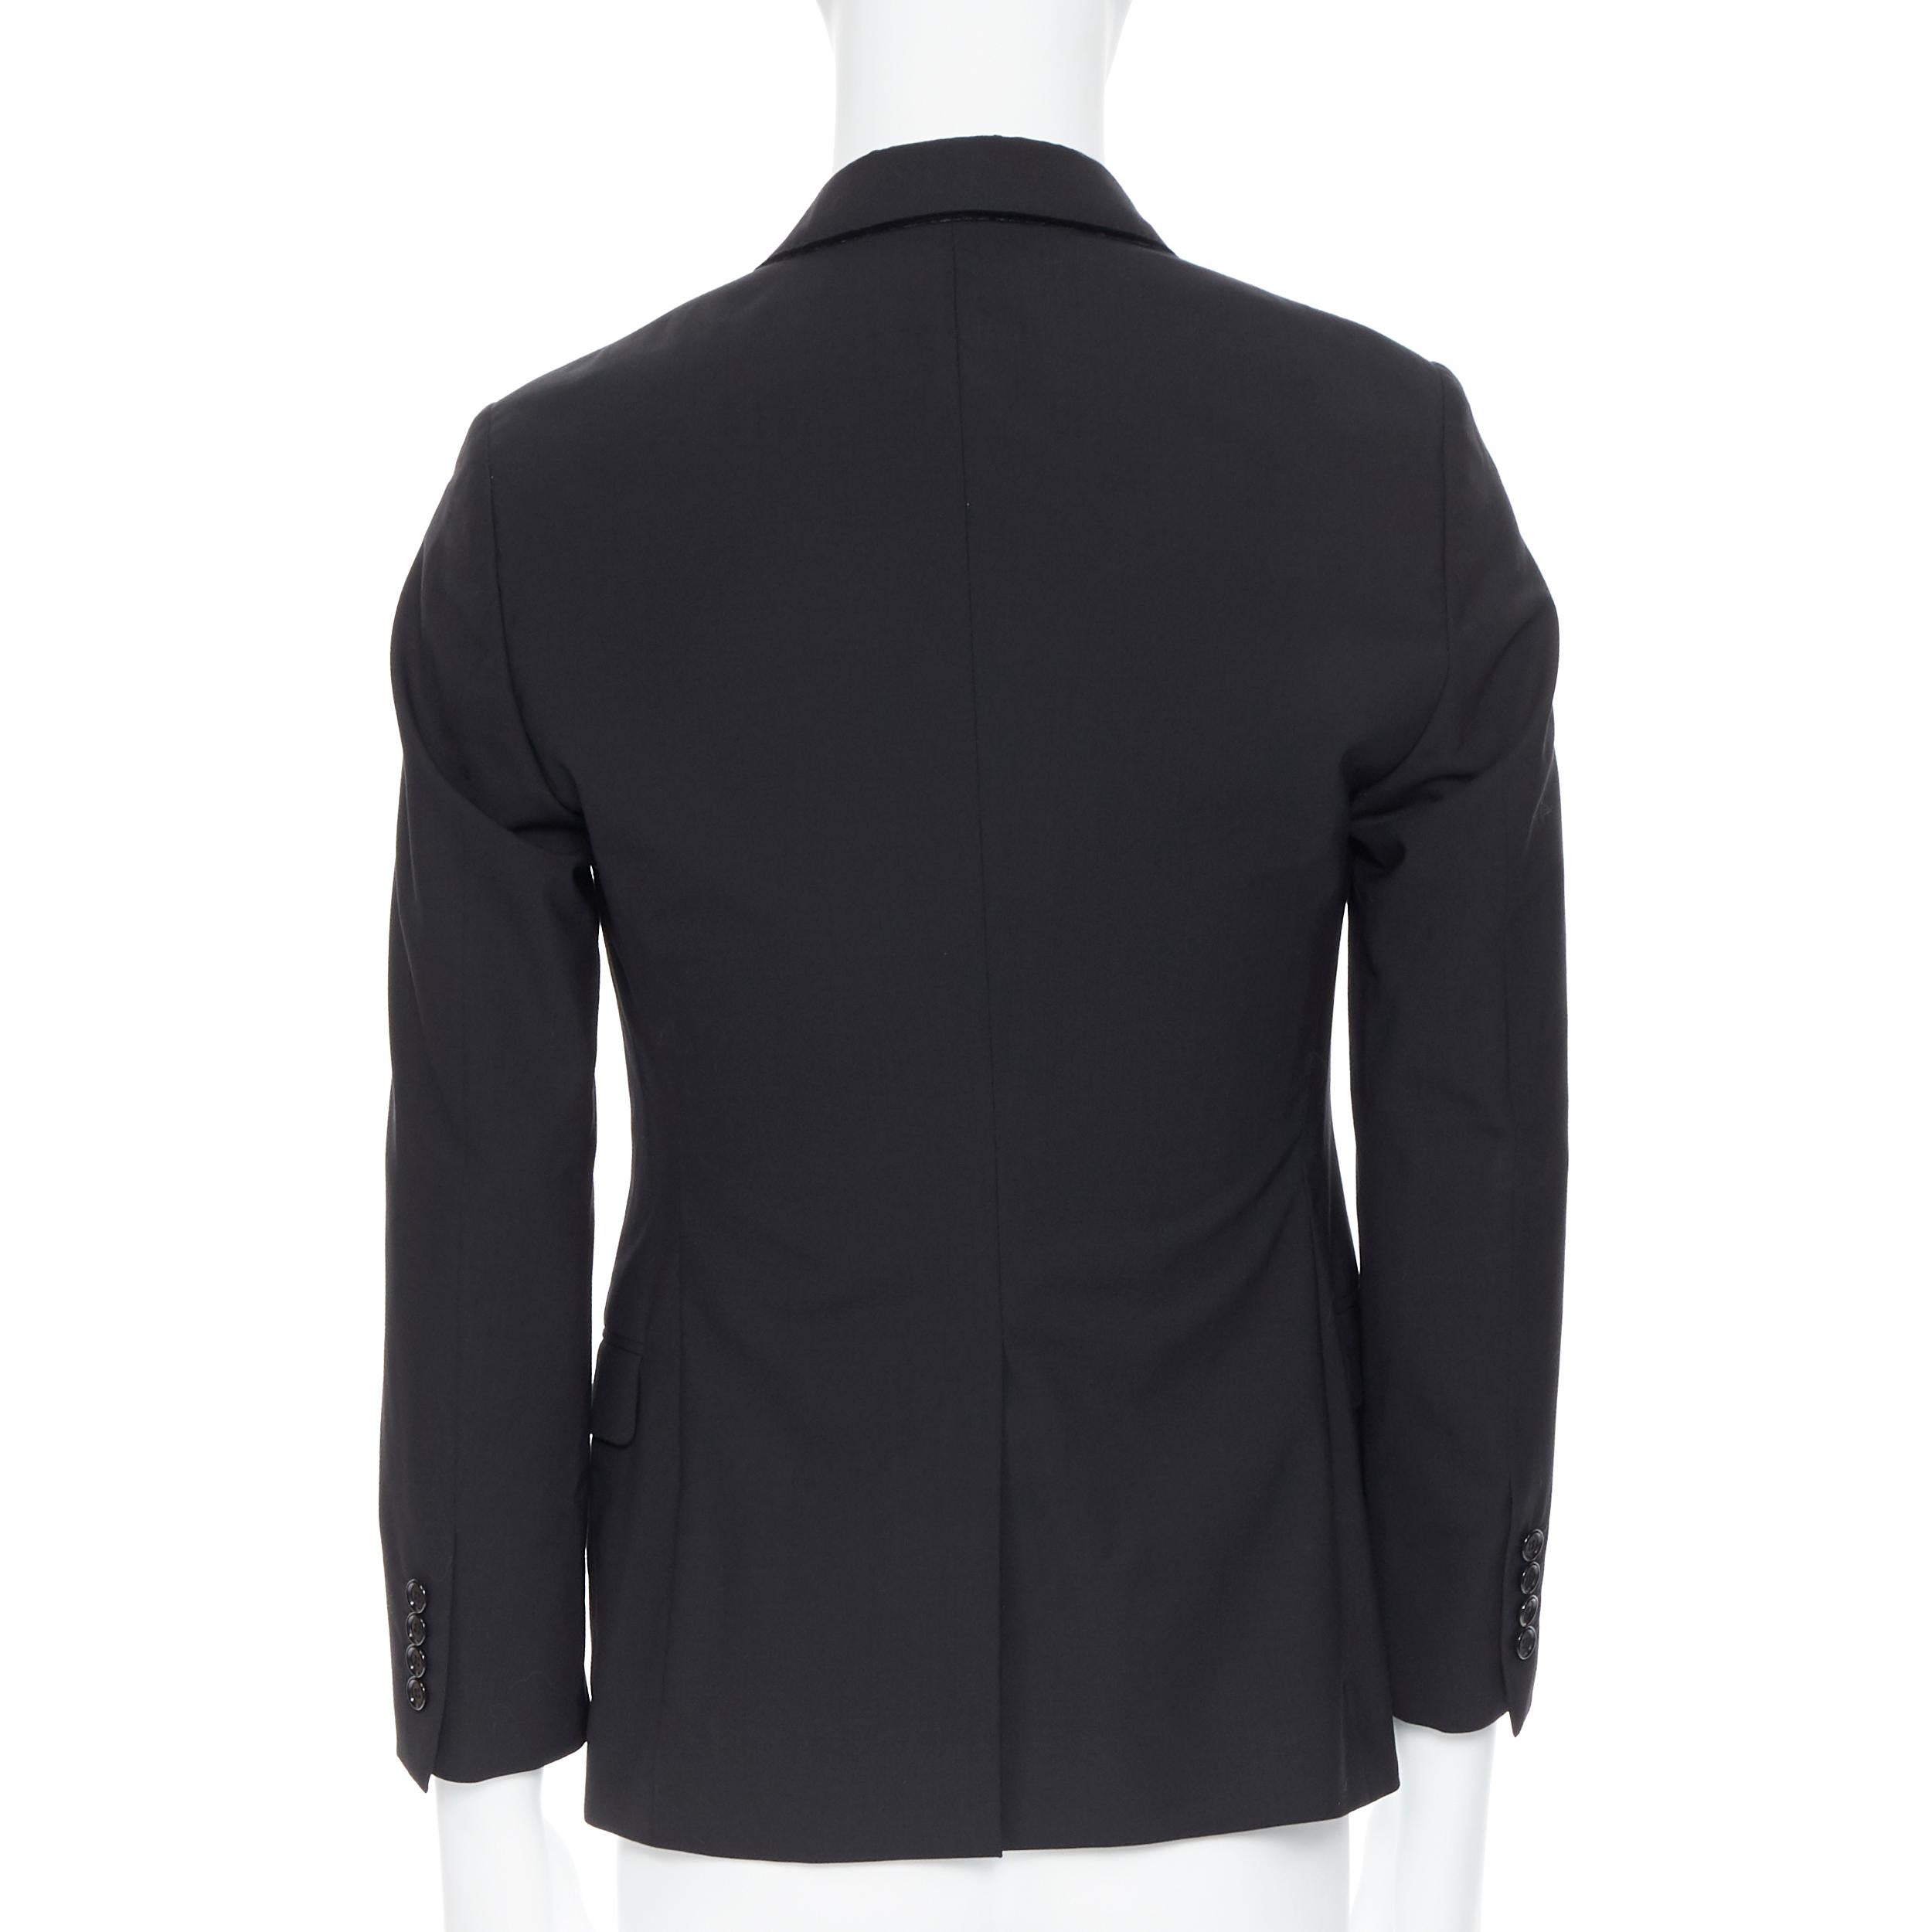 Black LANVIN ALBER ELBAZ wool blend black velvet peak lapel formal blazer jacket FR44